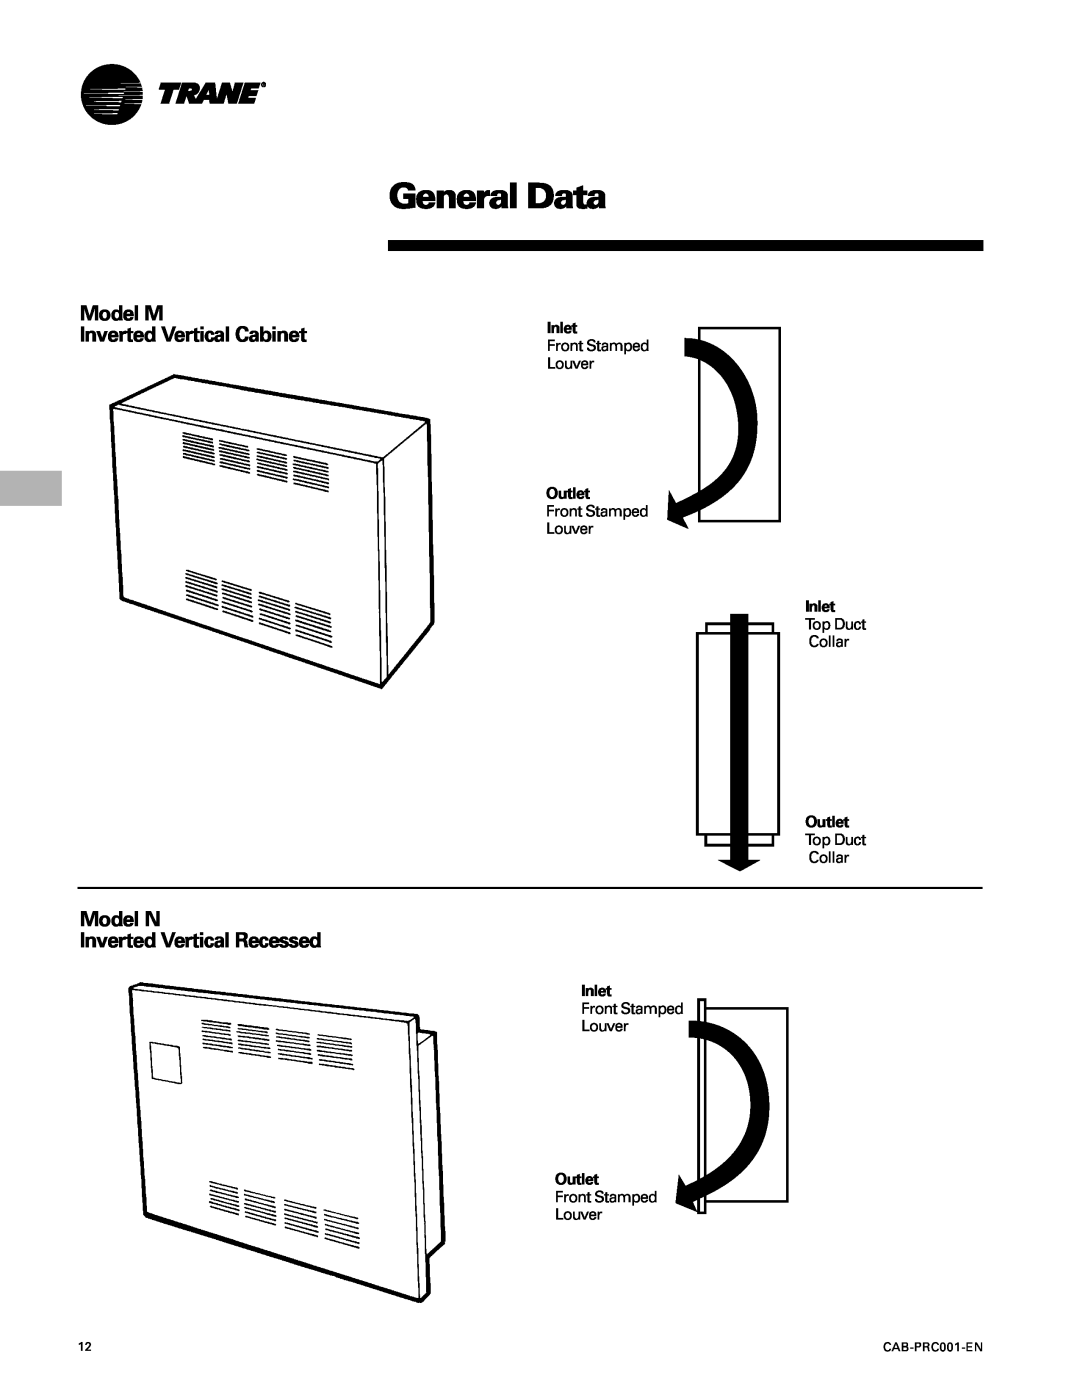 Trane CAB-PRC001-EN manual General Data, Model M Inverted Vertical Cabinet, Model N Inverted Vertical Recessed 